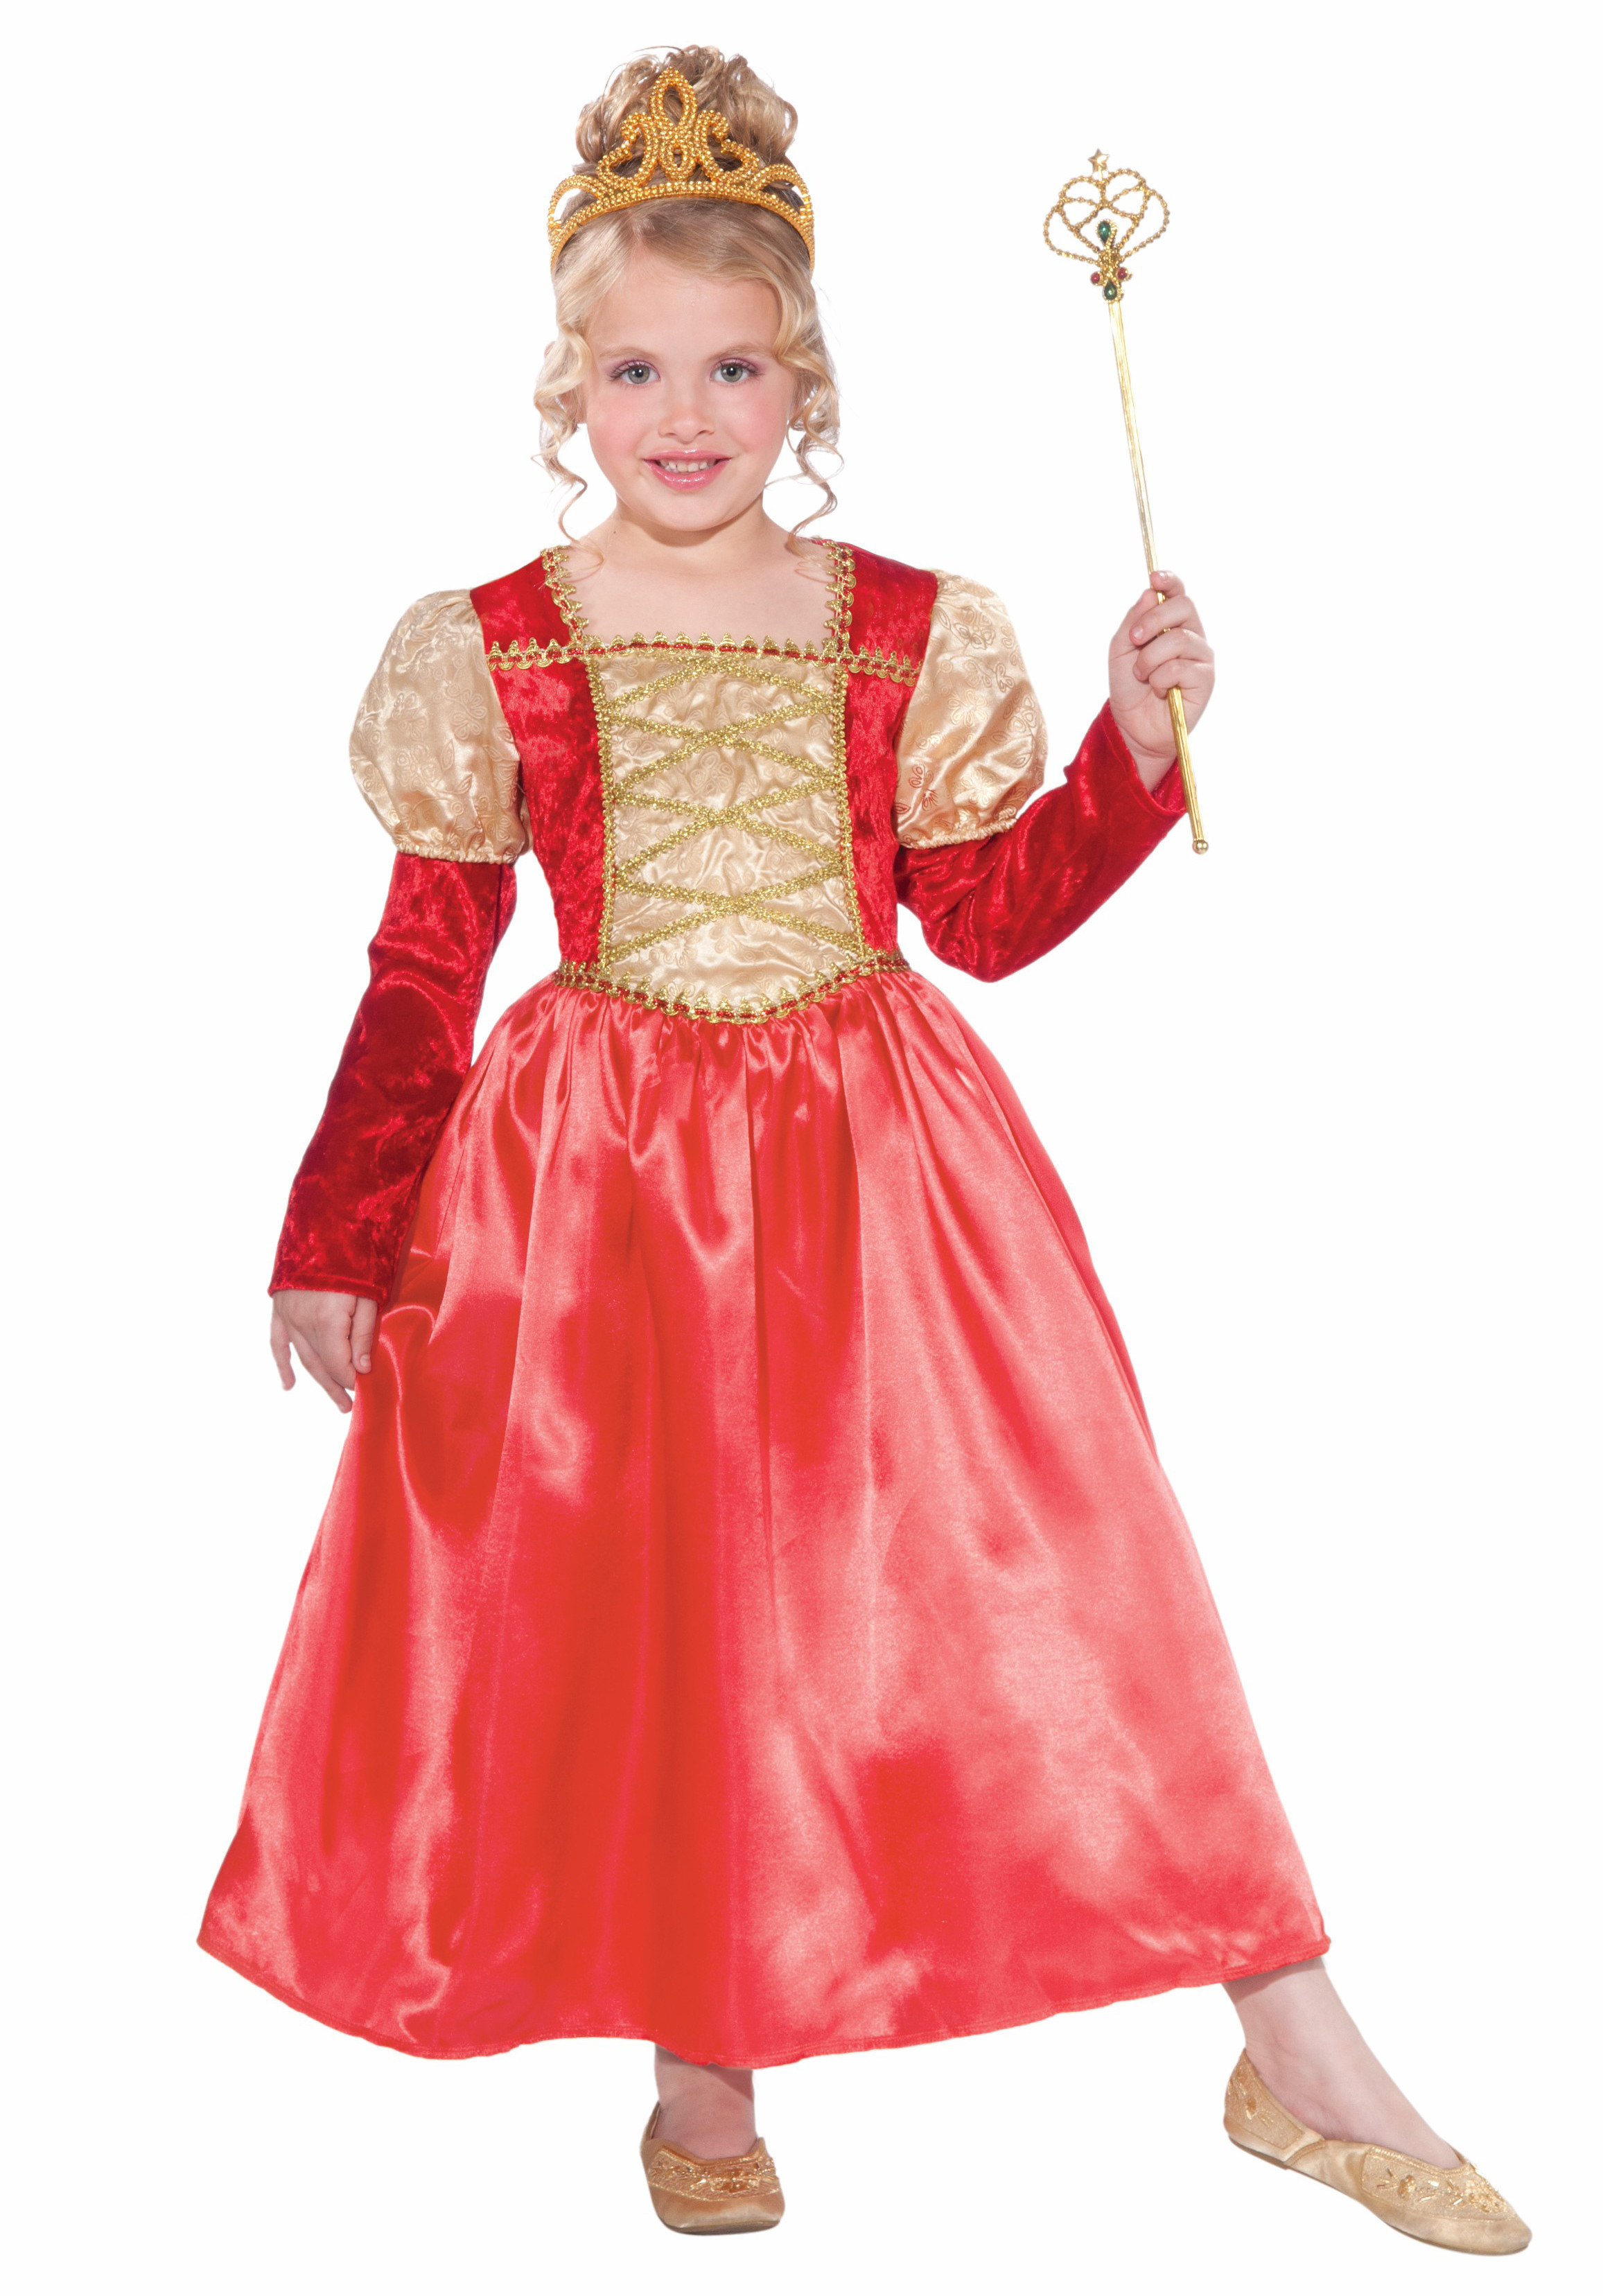 Детский костюм Принцессы в красно-золотом - красивое платье красного цвета ...